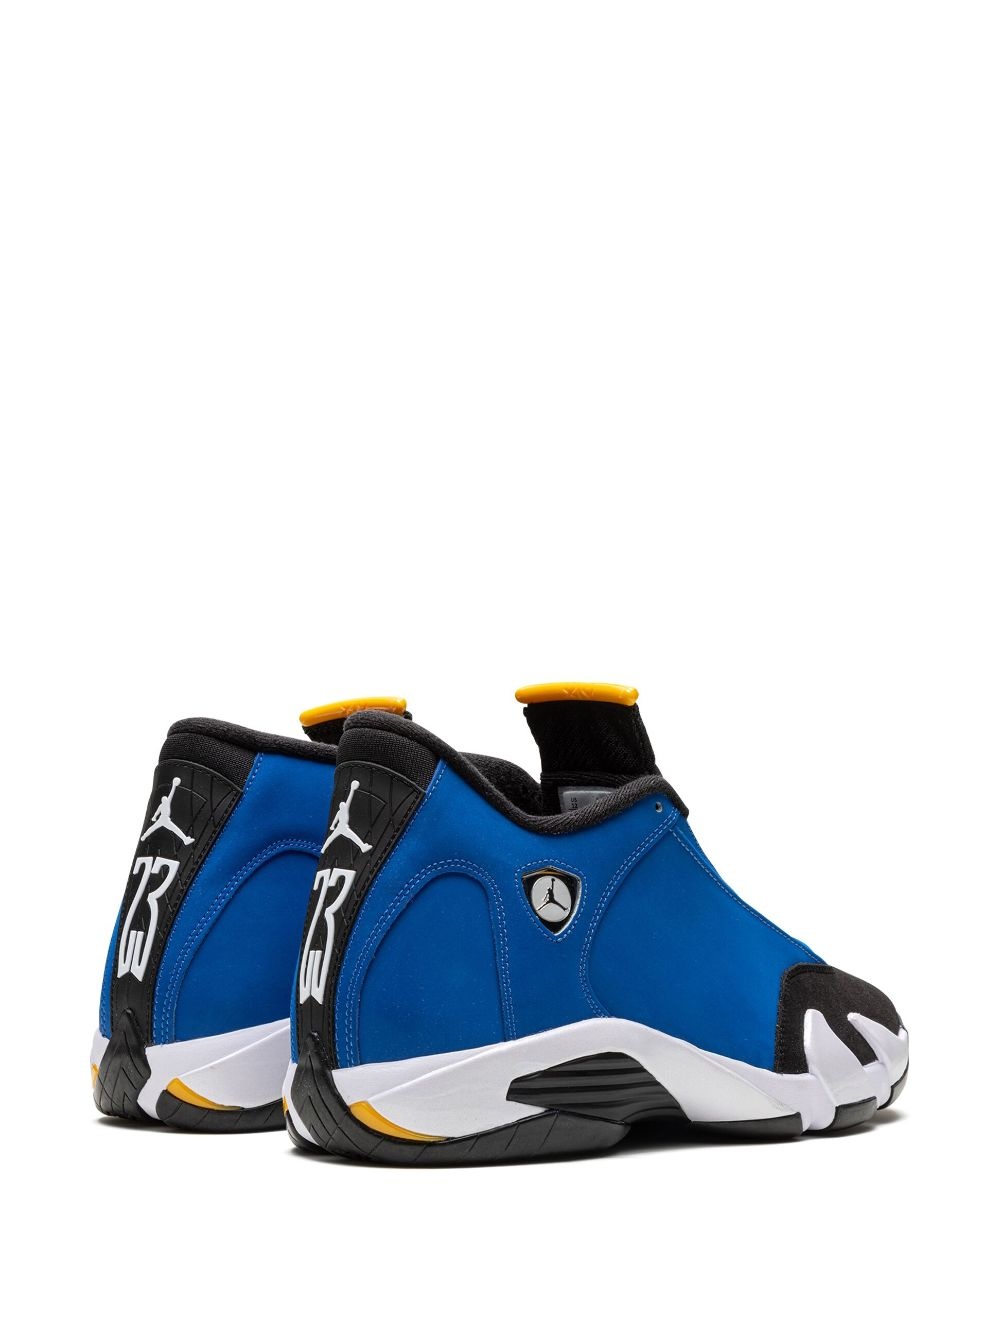 Air Jordan 14 "Laney" sneakers - 3